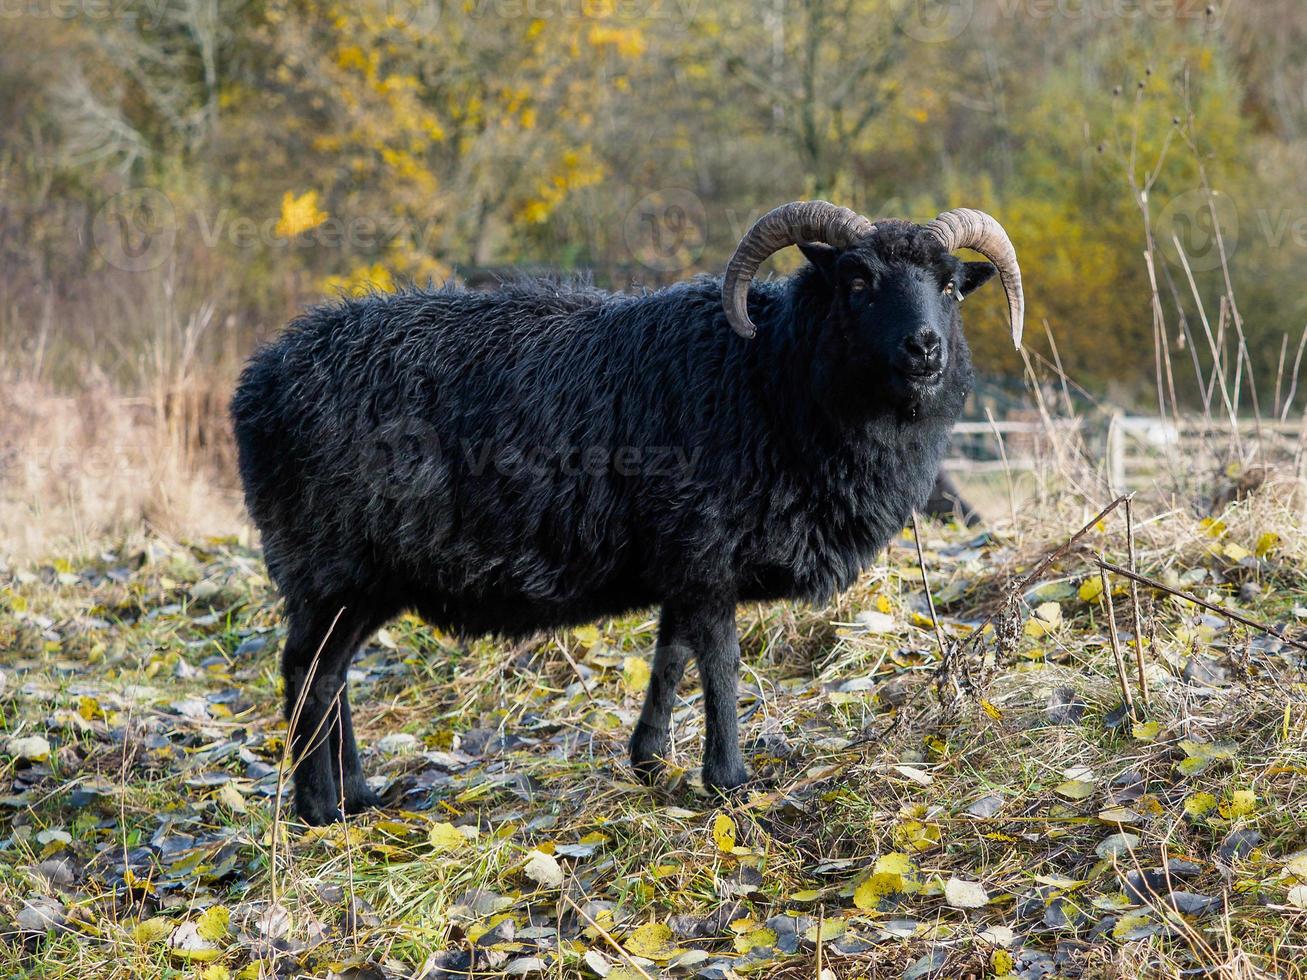 oveja negra hebrideana en la reserva natural de warnham foto